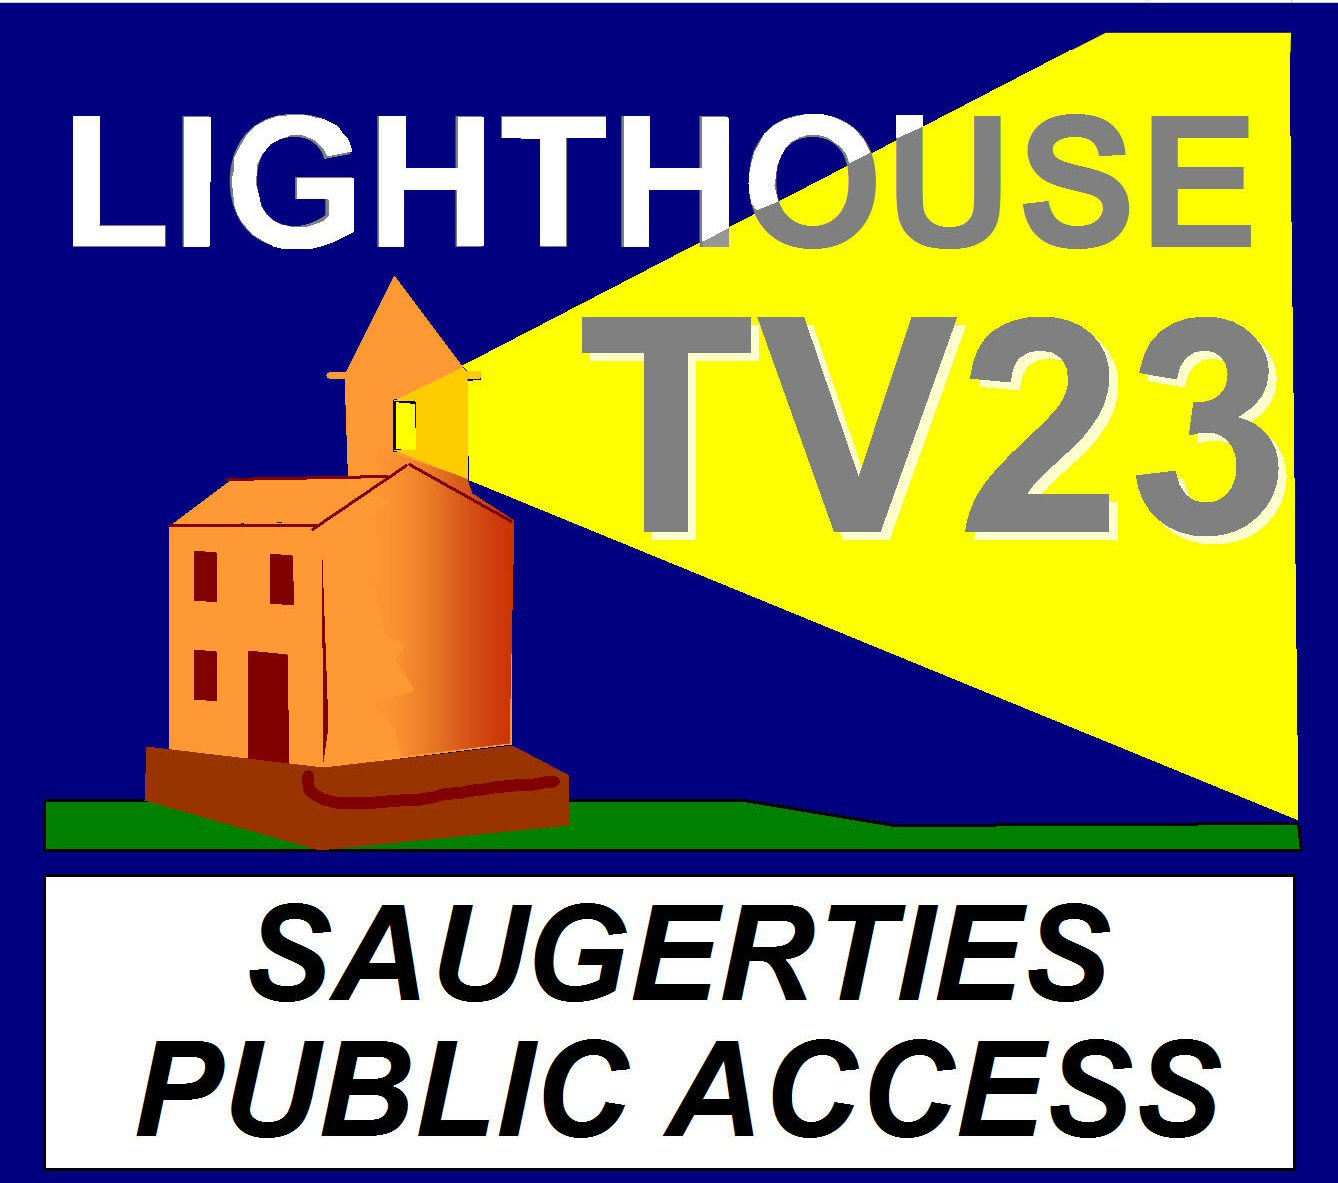 Saugerties, NY Lighthouse TV23 - NY Lighthouse TV23 VOD Player - organization logo